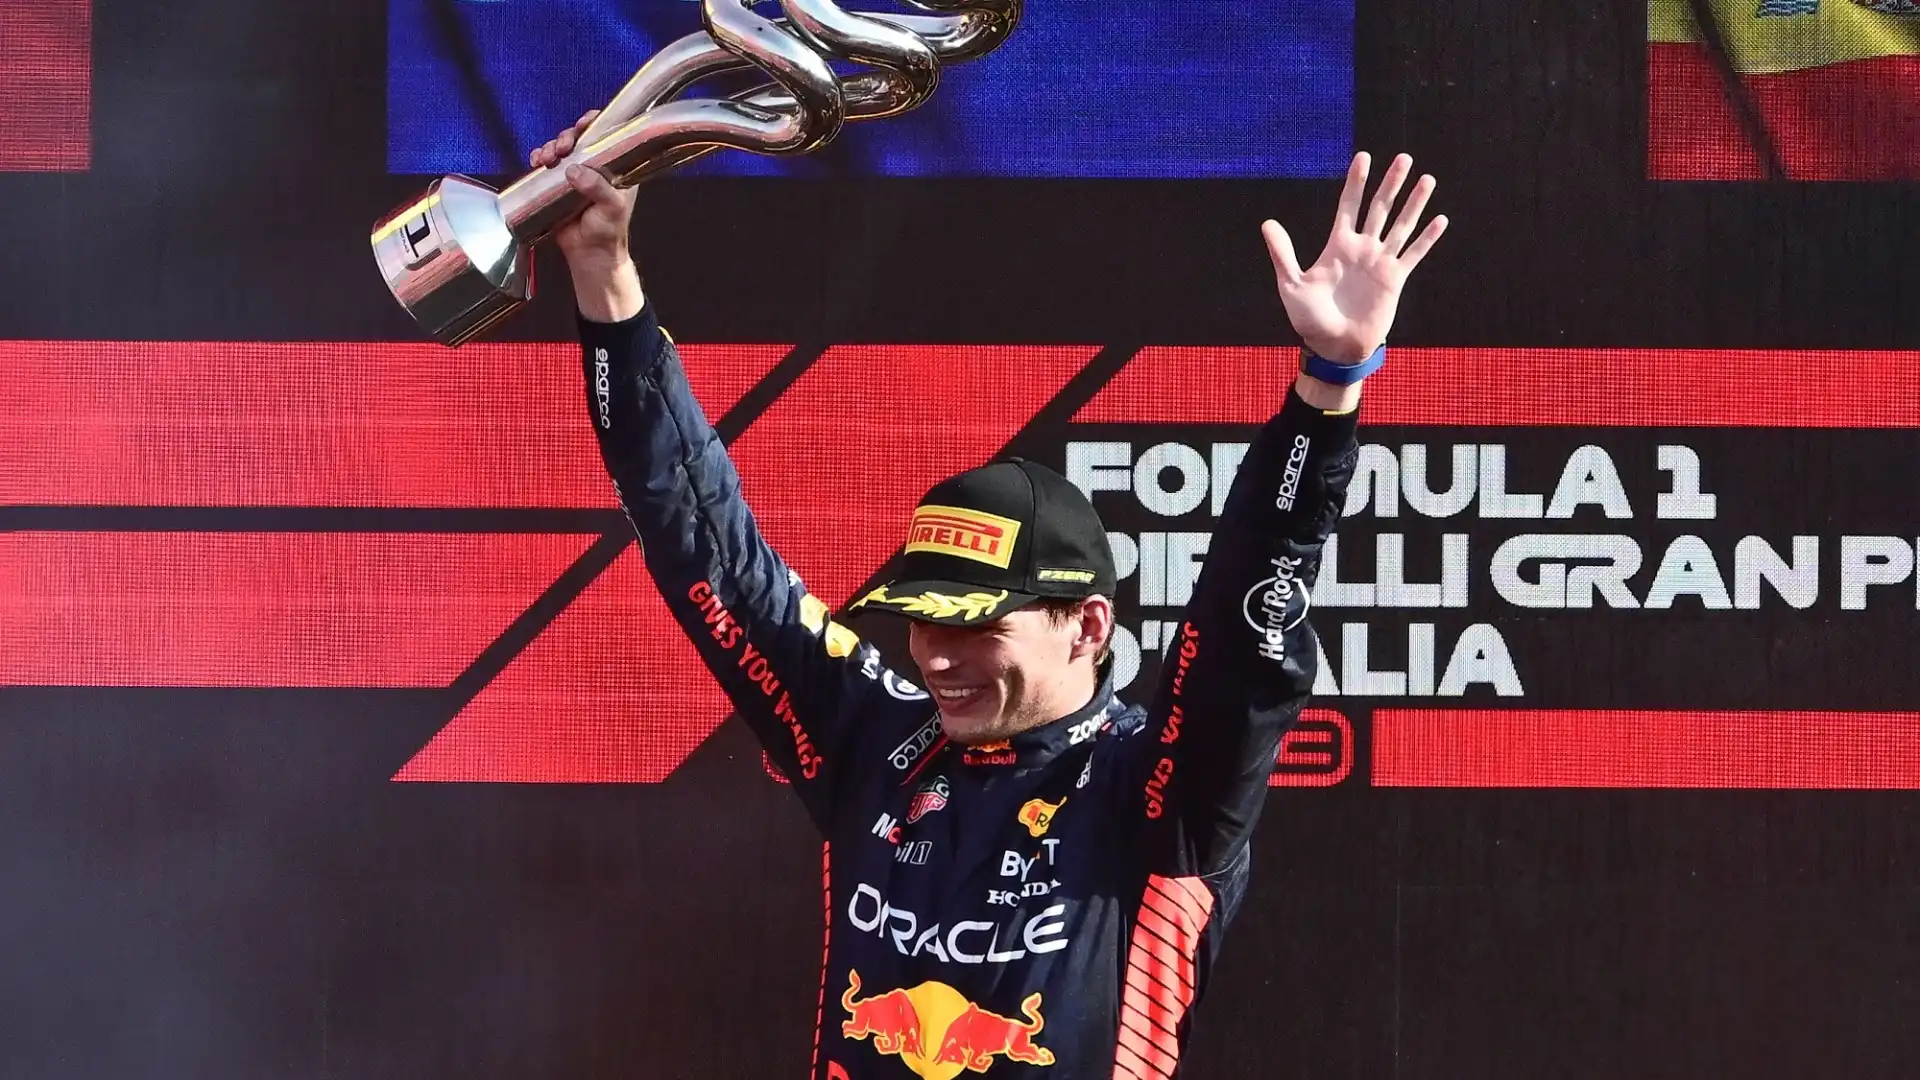 Il pilota della Red Bull ha centrato il record a Monza, superando così il precedente primato di Vettel di 9 vittorie